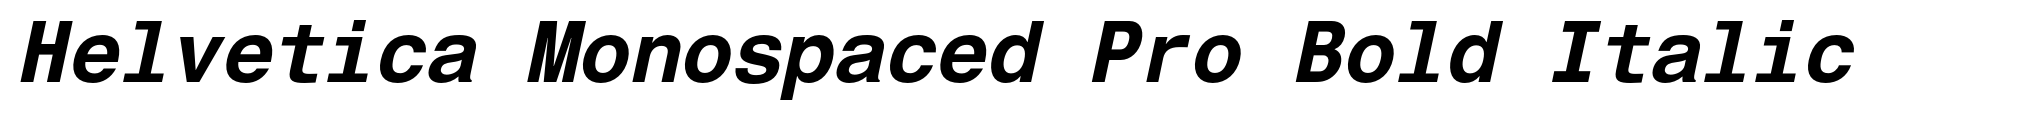 Helvetica Monospaced Pro Bold Italic image